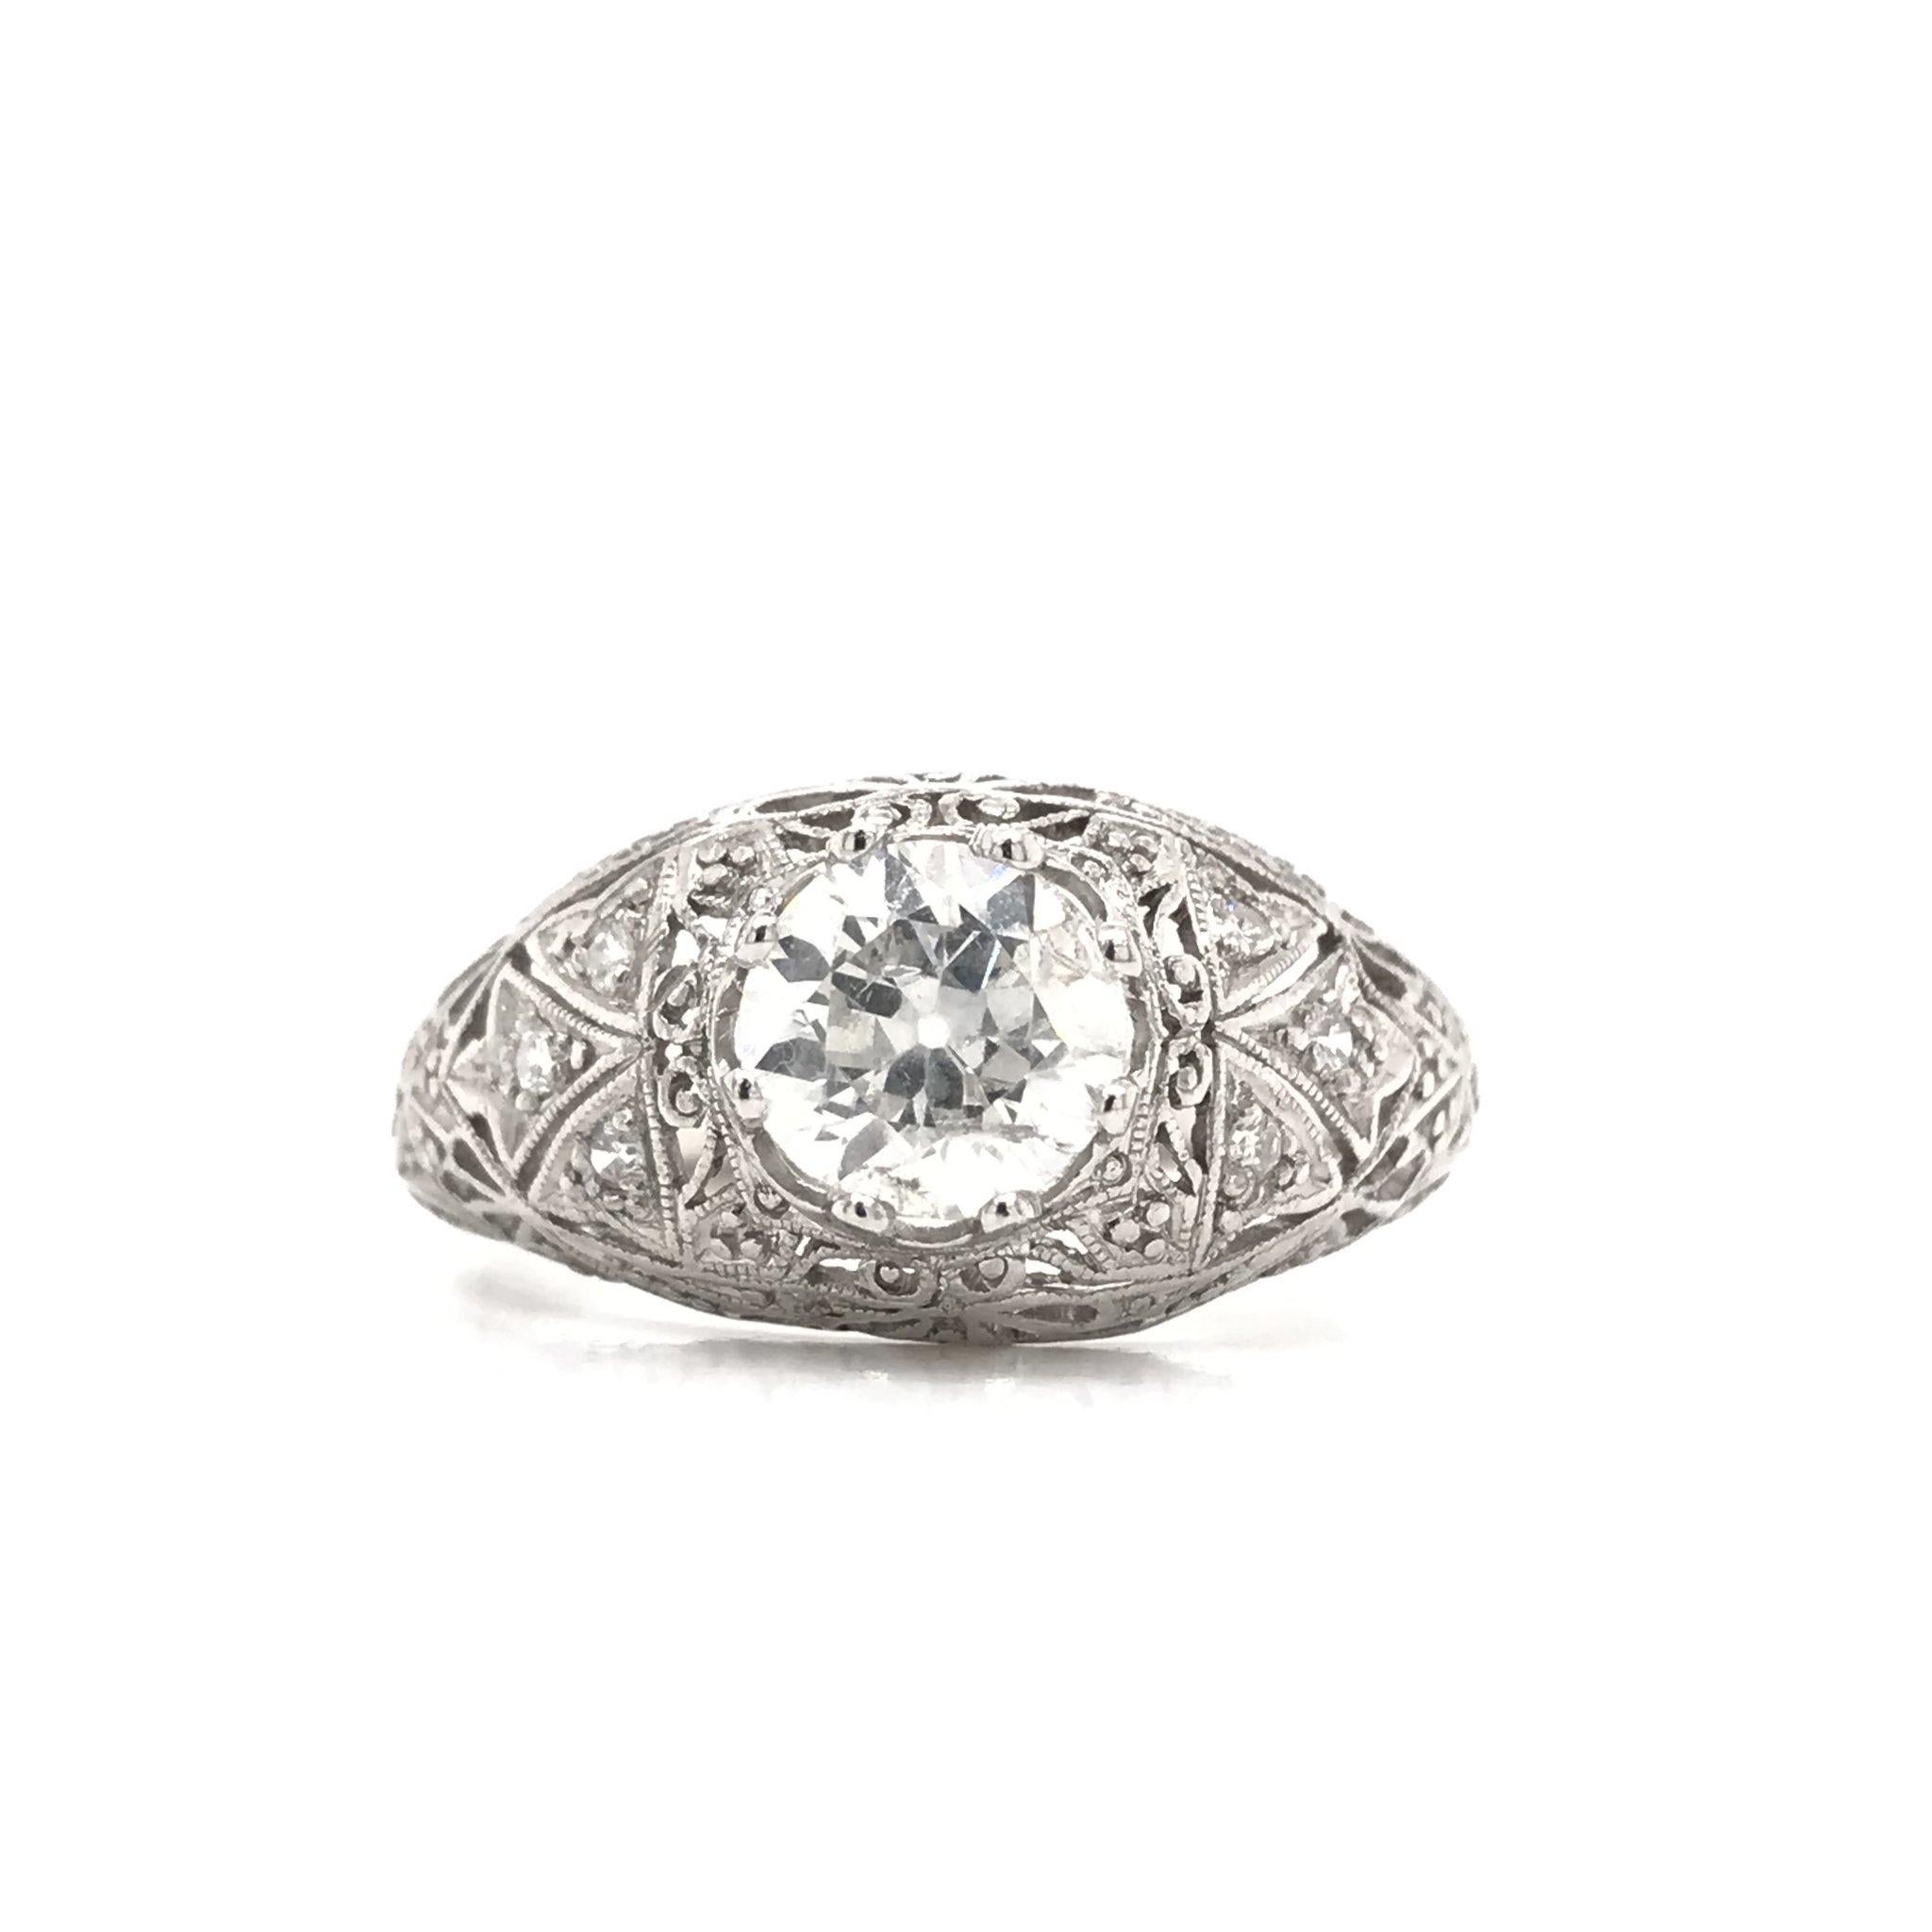 Old European Cut Antique 1.15 Carat Art Deco Platinum Diamond Engagement Ring